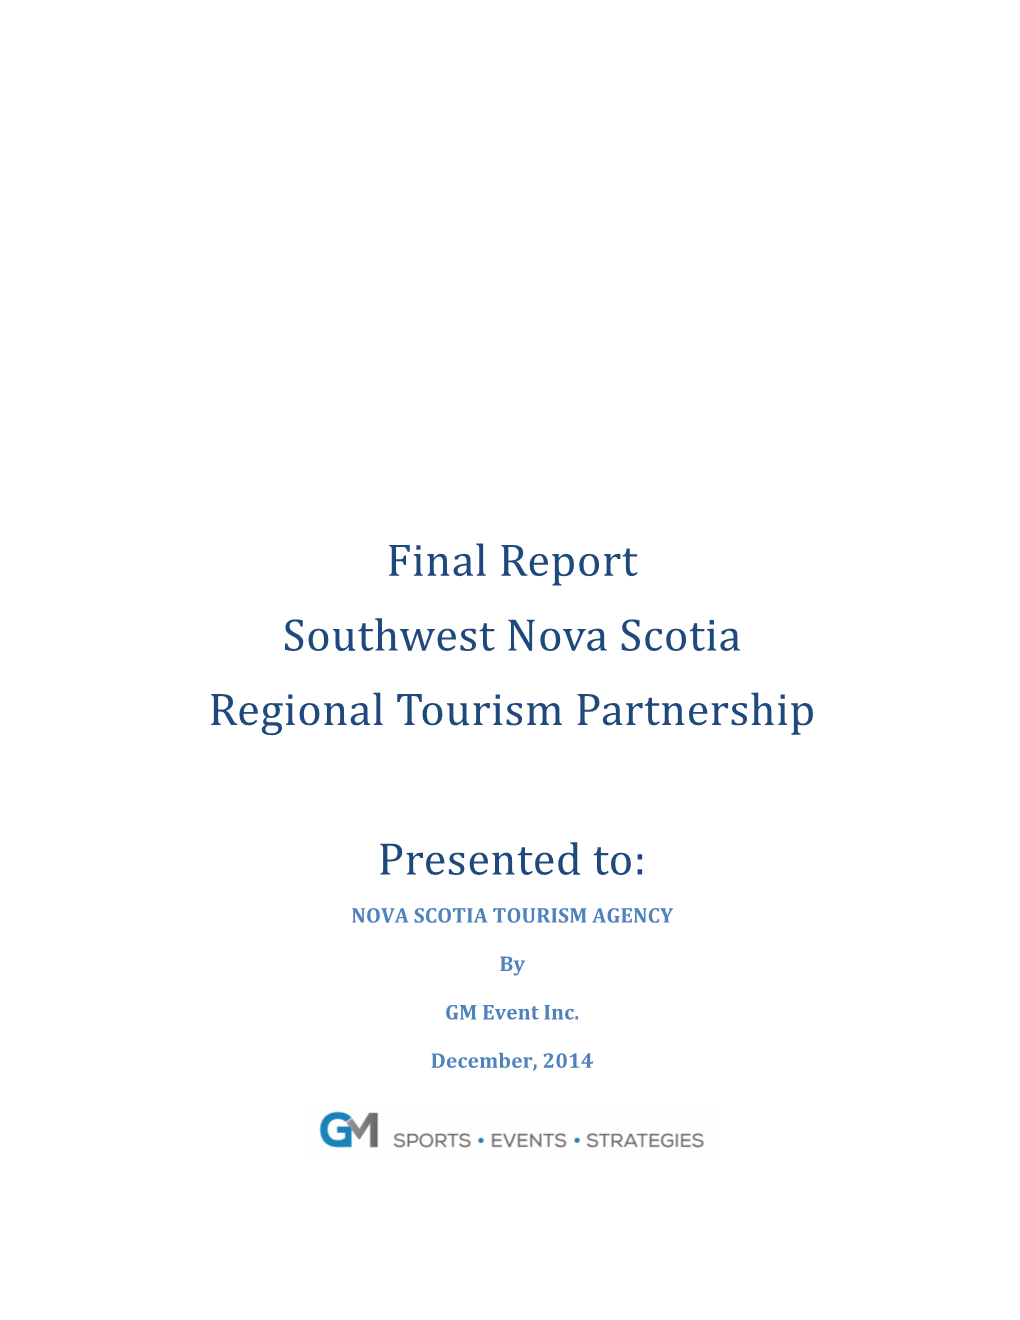 Final Report Southwest Nova Scotia Regional Tourism Partnership